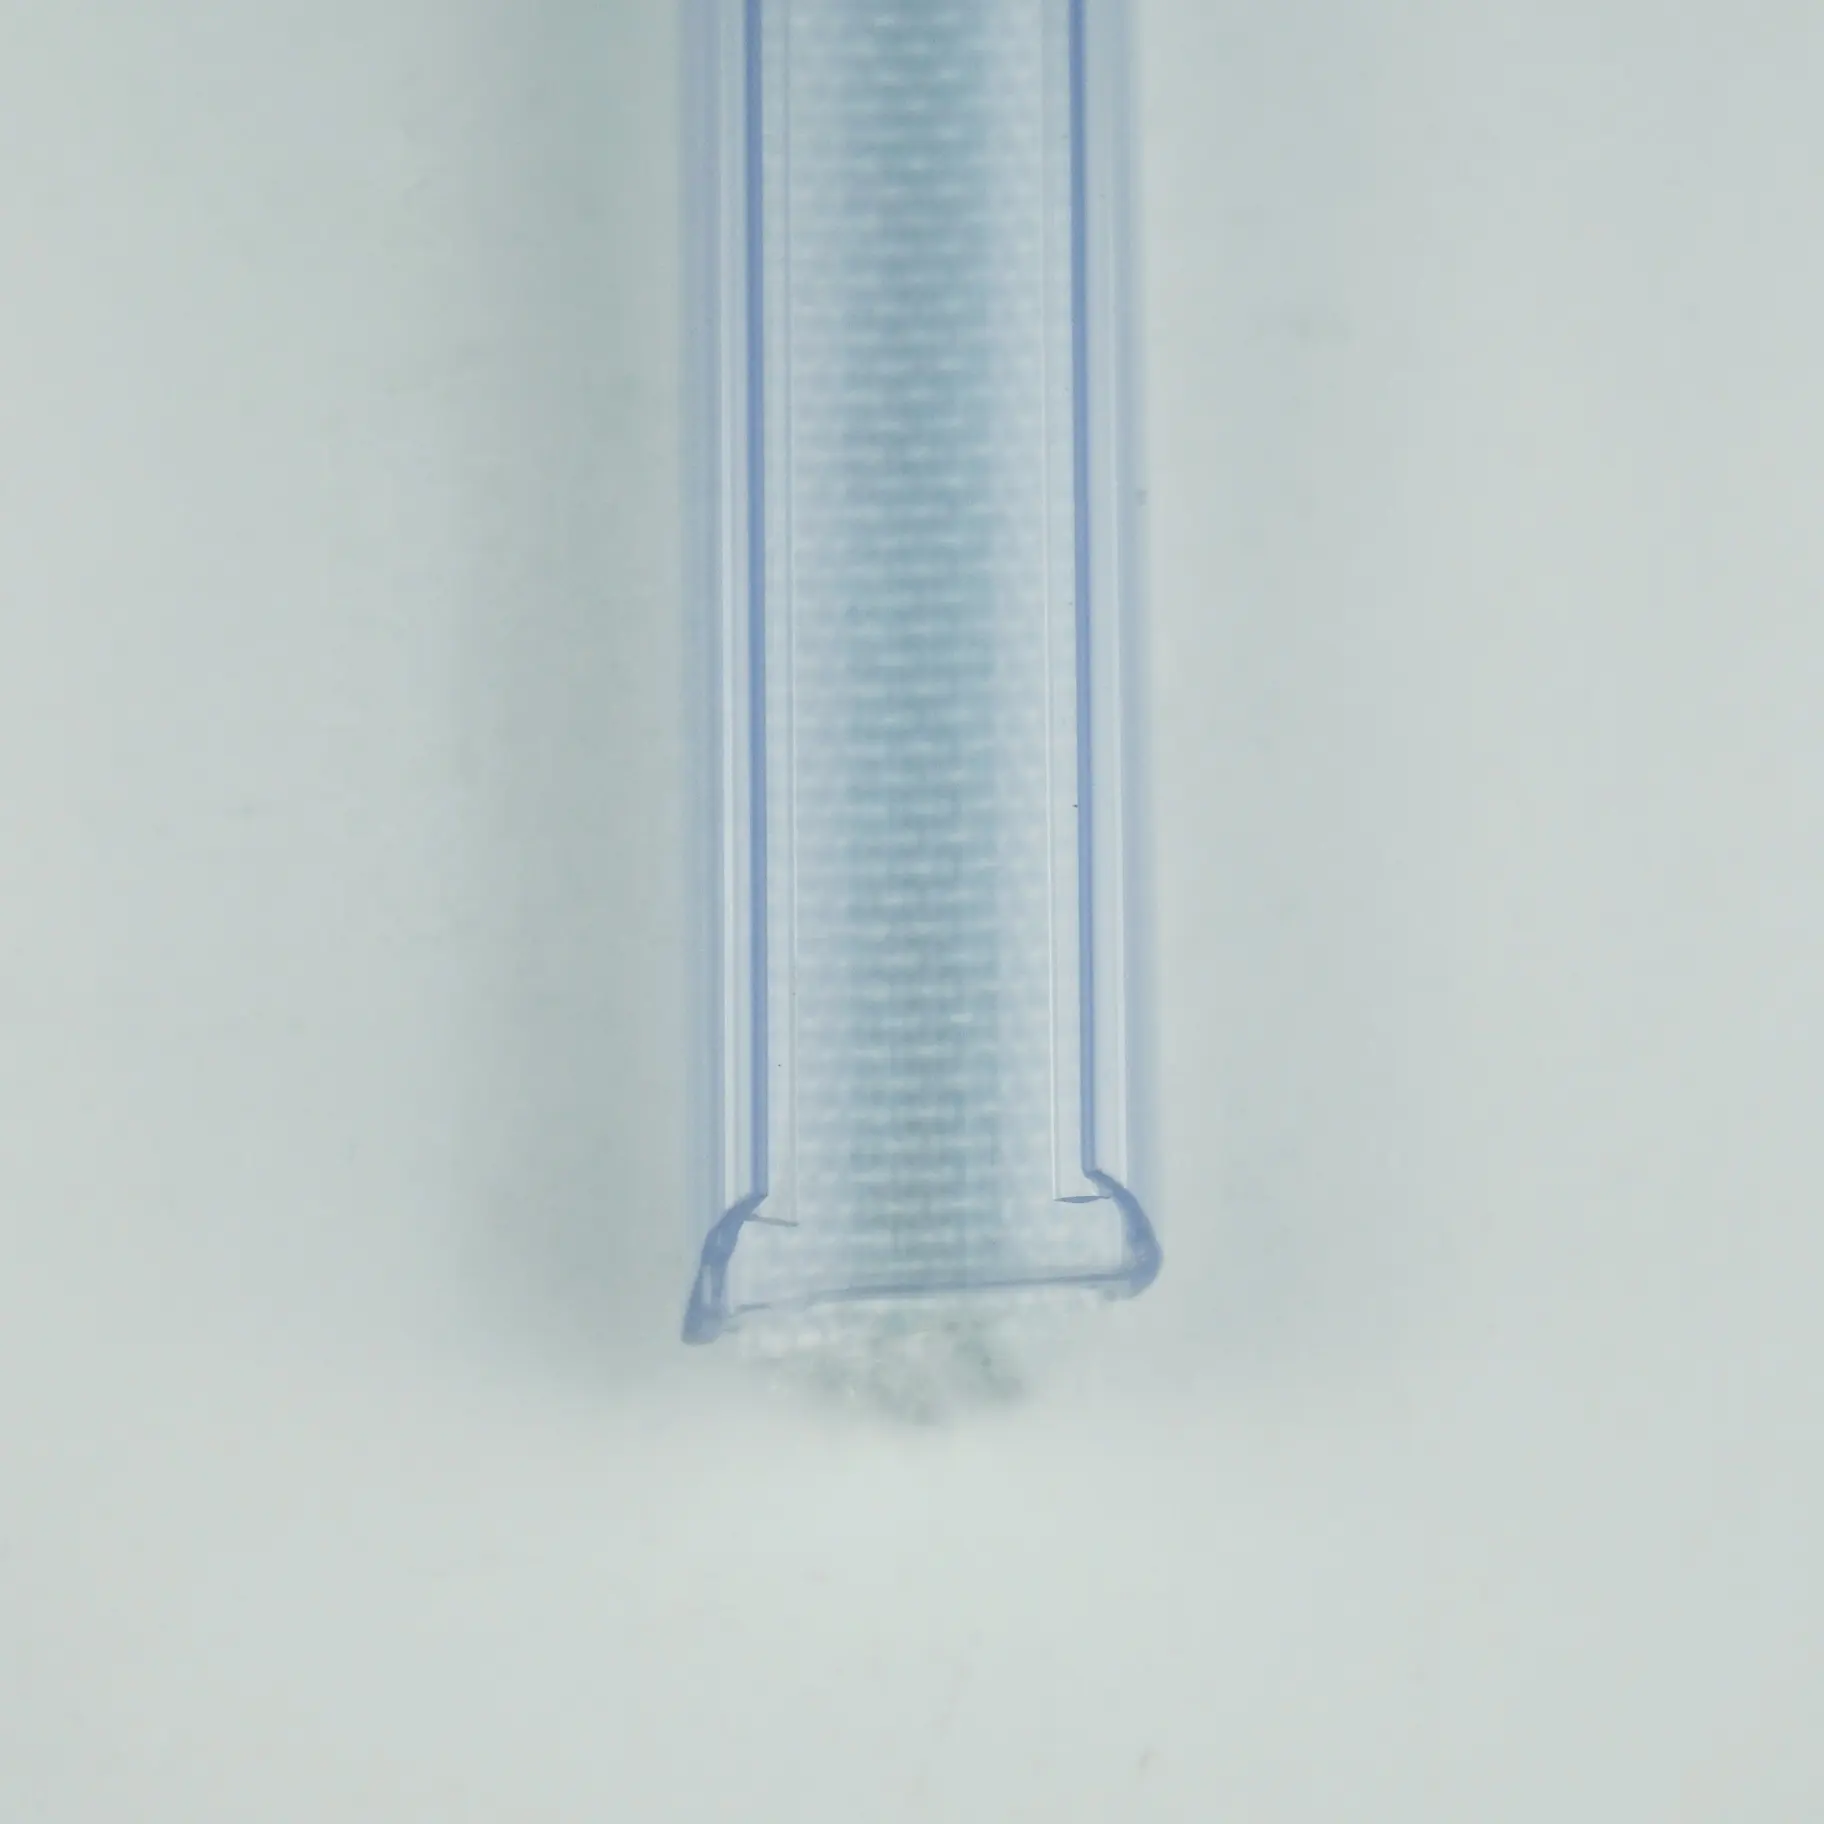 Glastür rahmenlose Gummi bürstenst reifen dichtung 90 Grad wasserdichte Tür Glass chiebetür PVC-Dichtung streifen mit Bürste